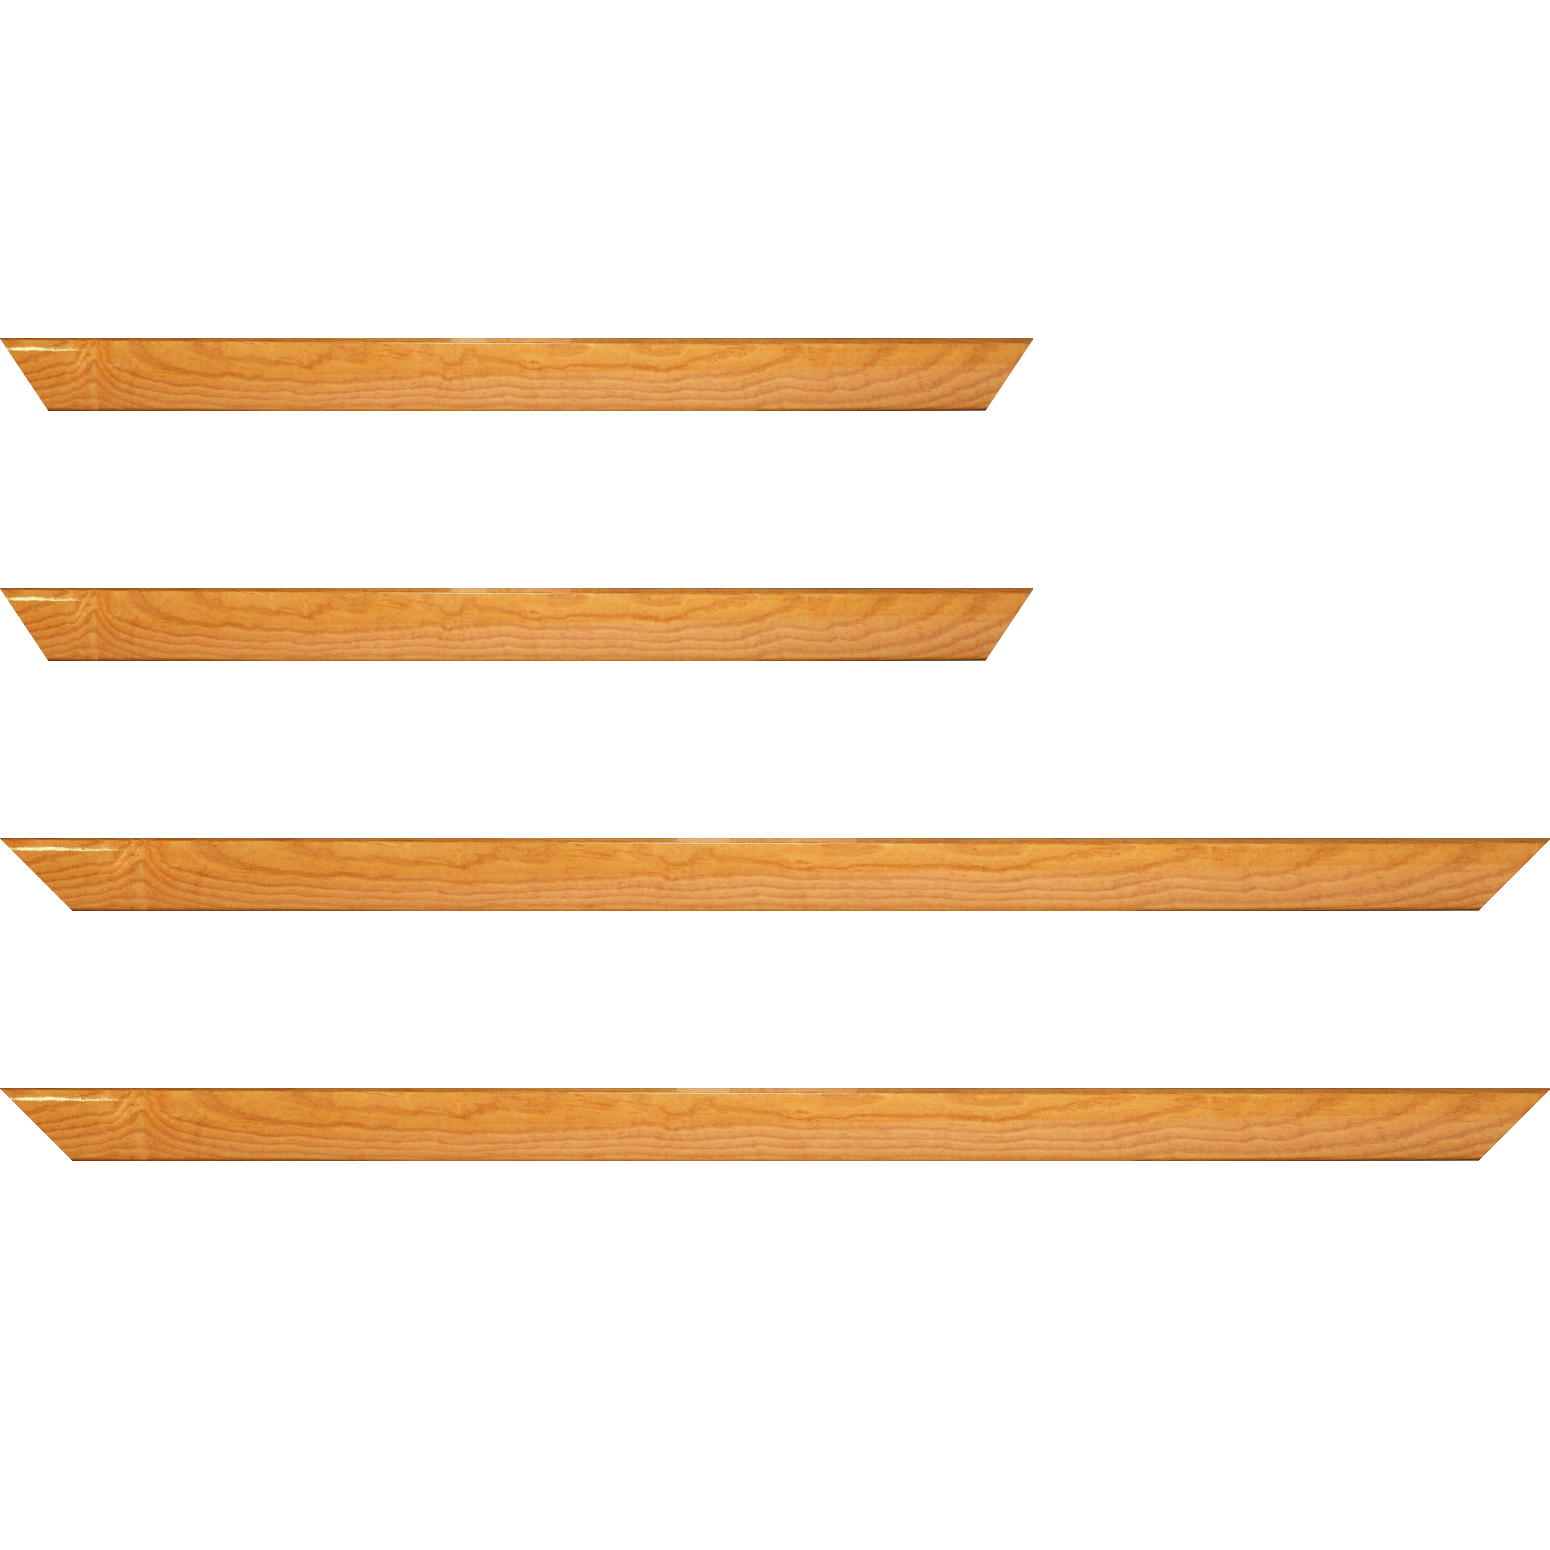 Baguette bois profil arrondi en pente plongeant largeur 2.4cm couleur jaune moutarde finition vernis brillant,veine du bois  apparent (pin) , - 40x60